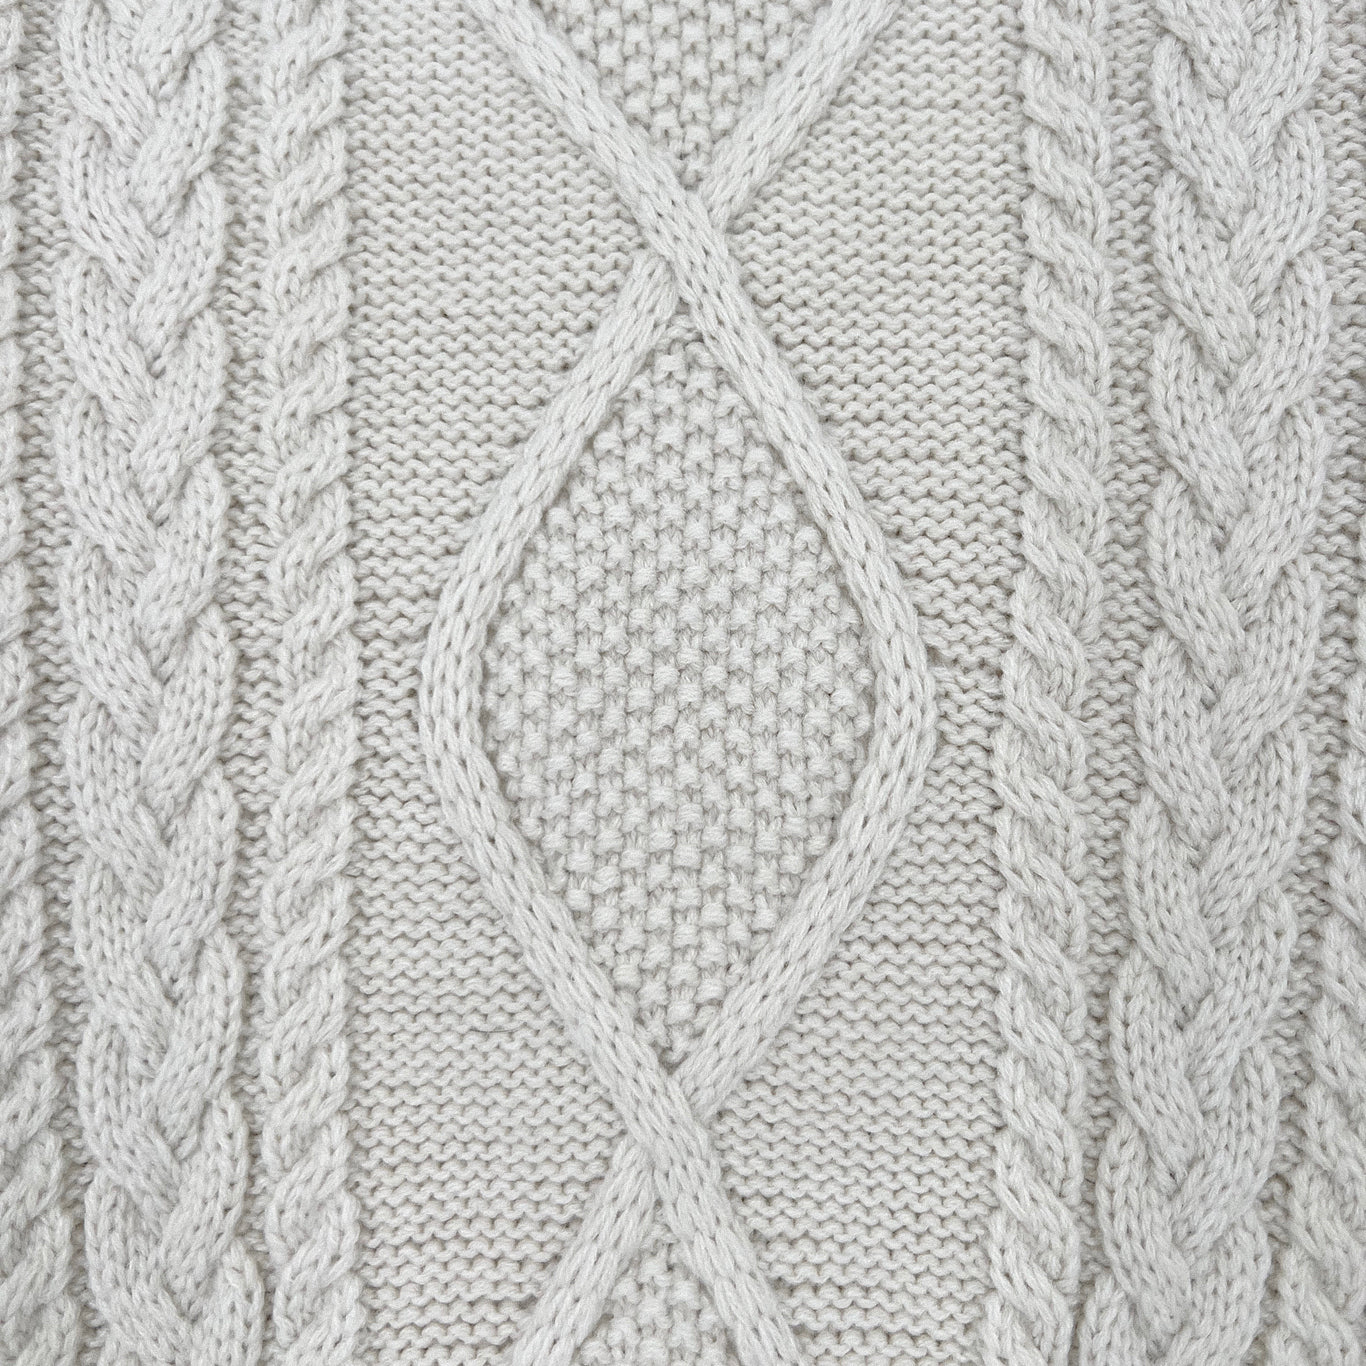 Aran Knit Sweater